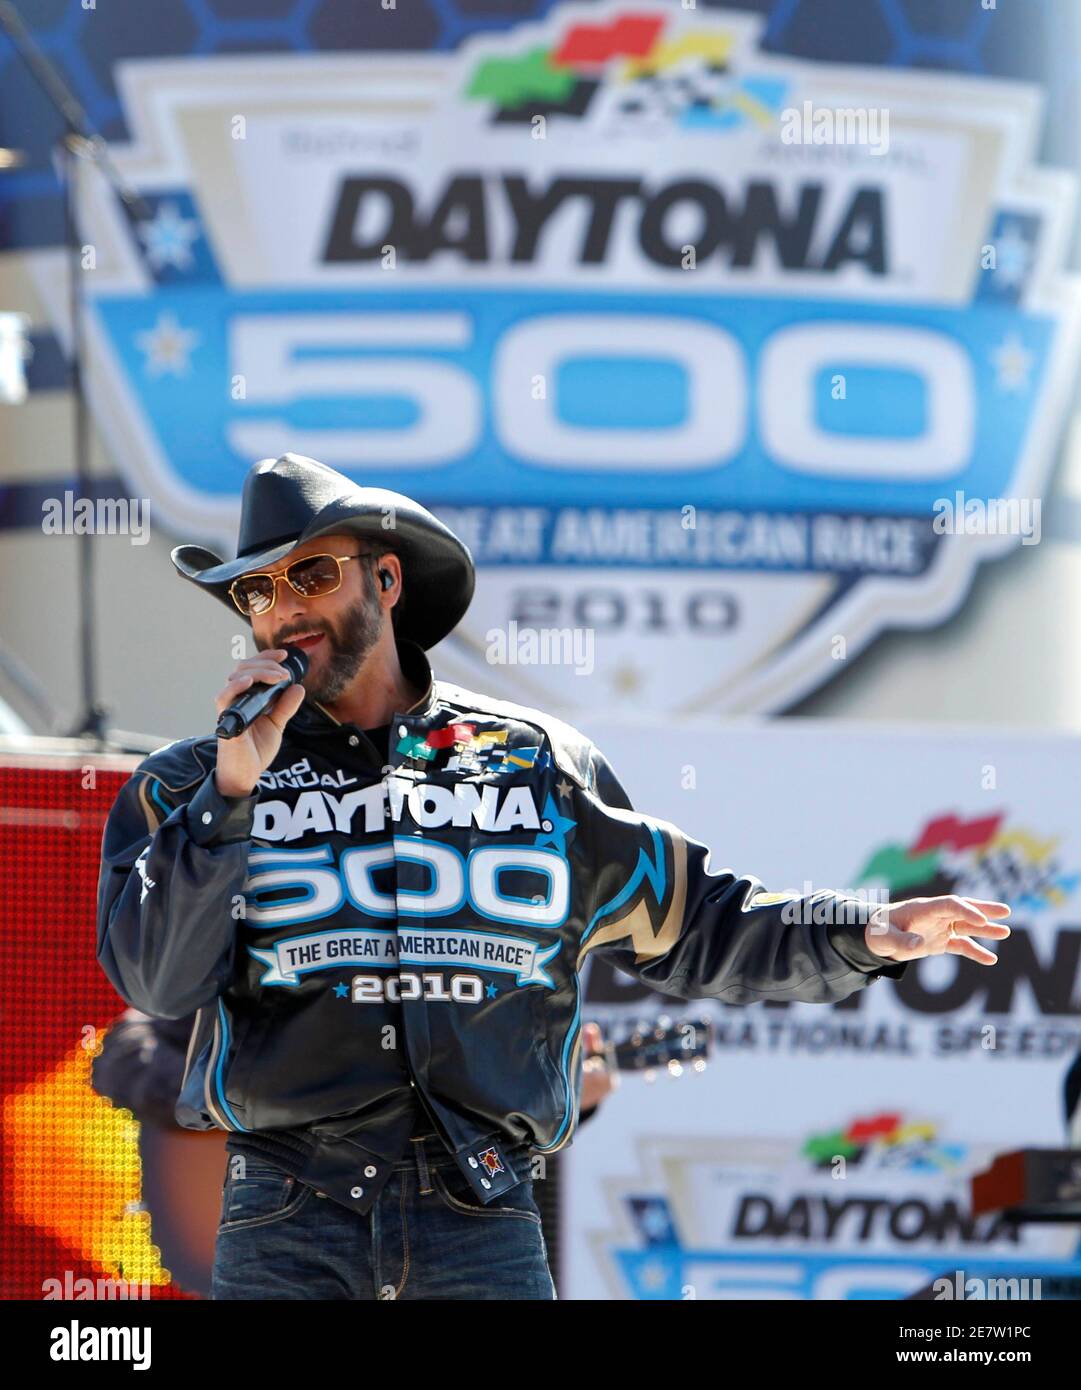 Il cantante di musica country Tim McGraw suona prima dell'inizio della gara NASCAR Sprint Cup Series Daytona 500 al Daytona International Speedway di Daytona Beach, Florida, 14 febbraio 2010. REUTERS/Joe Skipper (STATI UNITI - Tag: SPORT MOTORISTICO RACING) Foto Stock